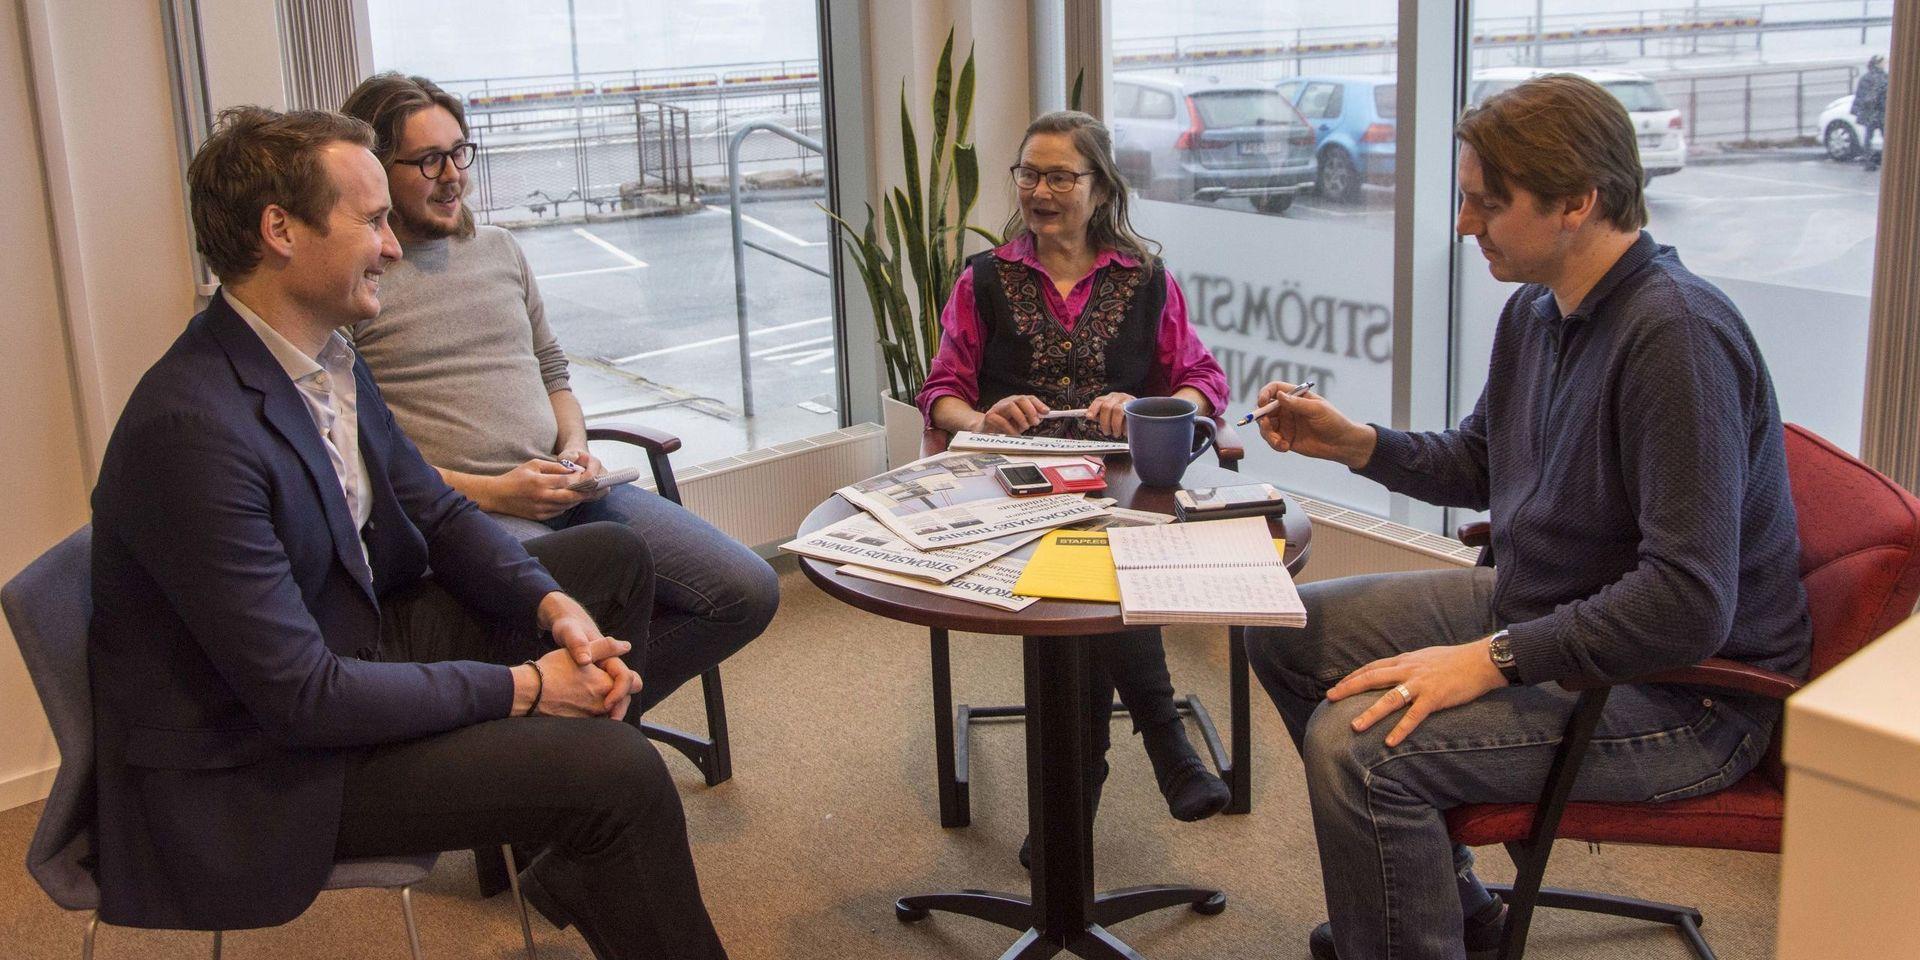 Redaktionsmöte med reportrarna Thomas Bennelind, Pontus Johansson och Marita Adamsson samt nyhetschef Jakob Simonson.